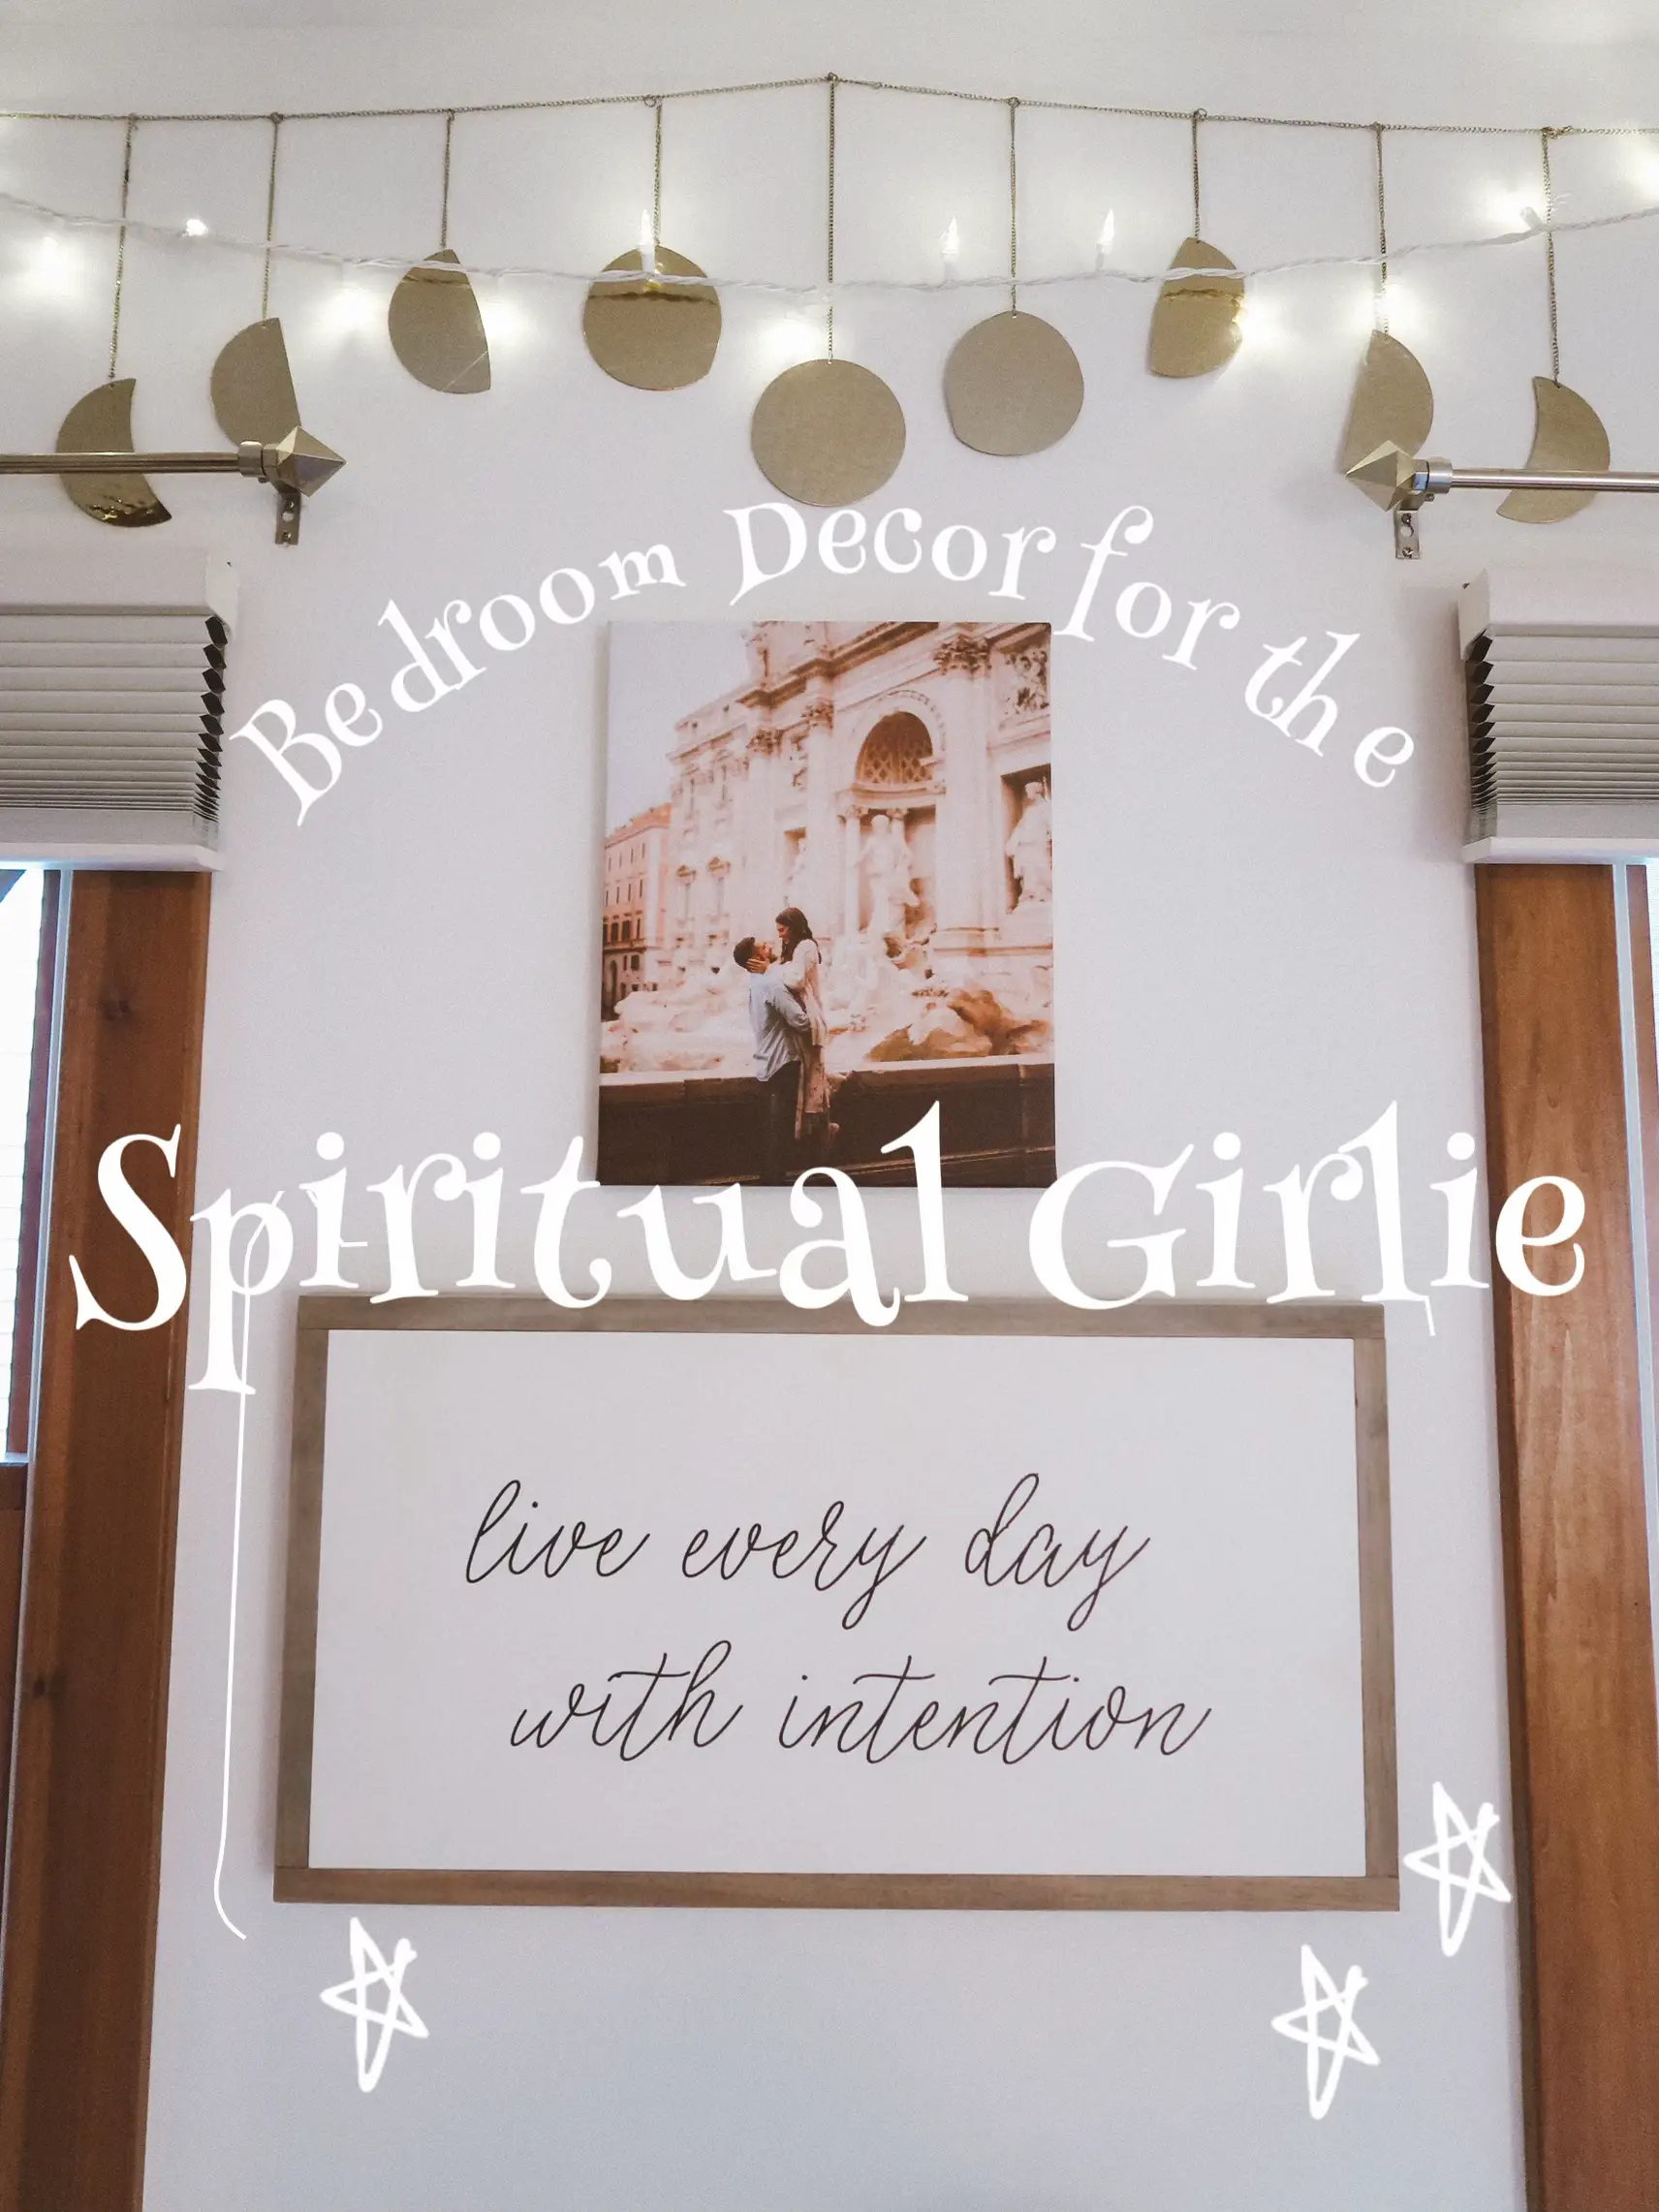 Bedroom Decor for the Spiritual Girlie 🌙✨